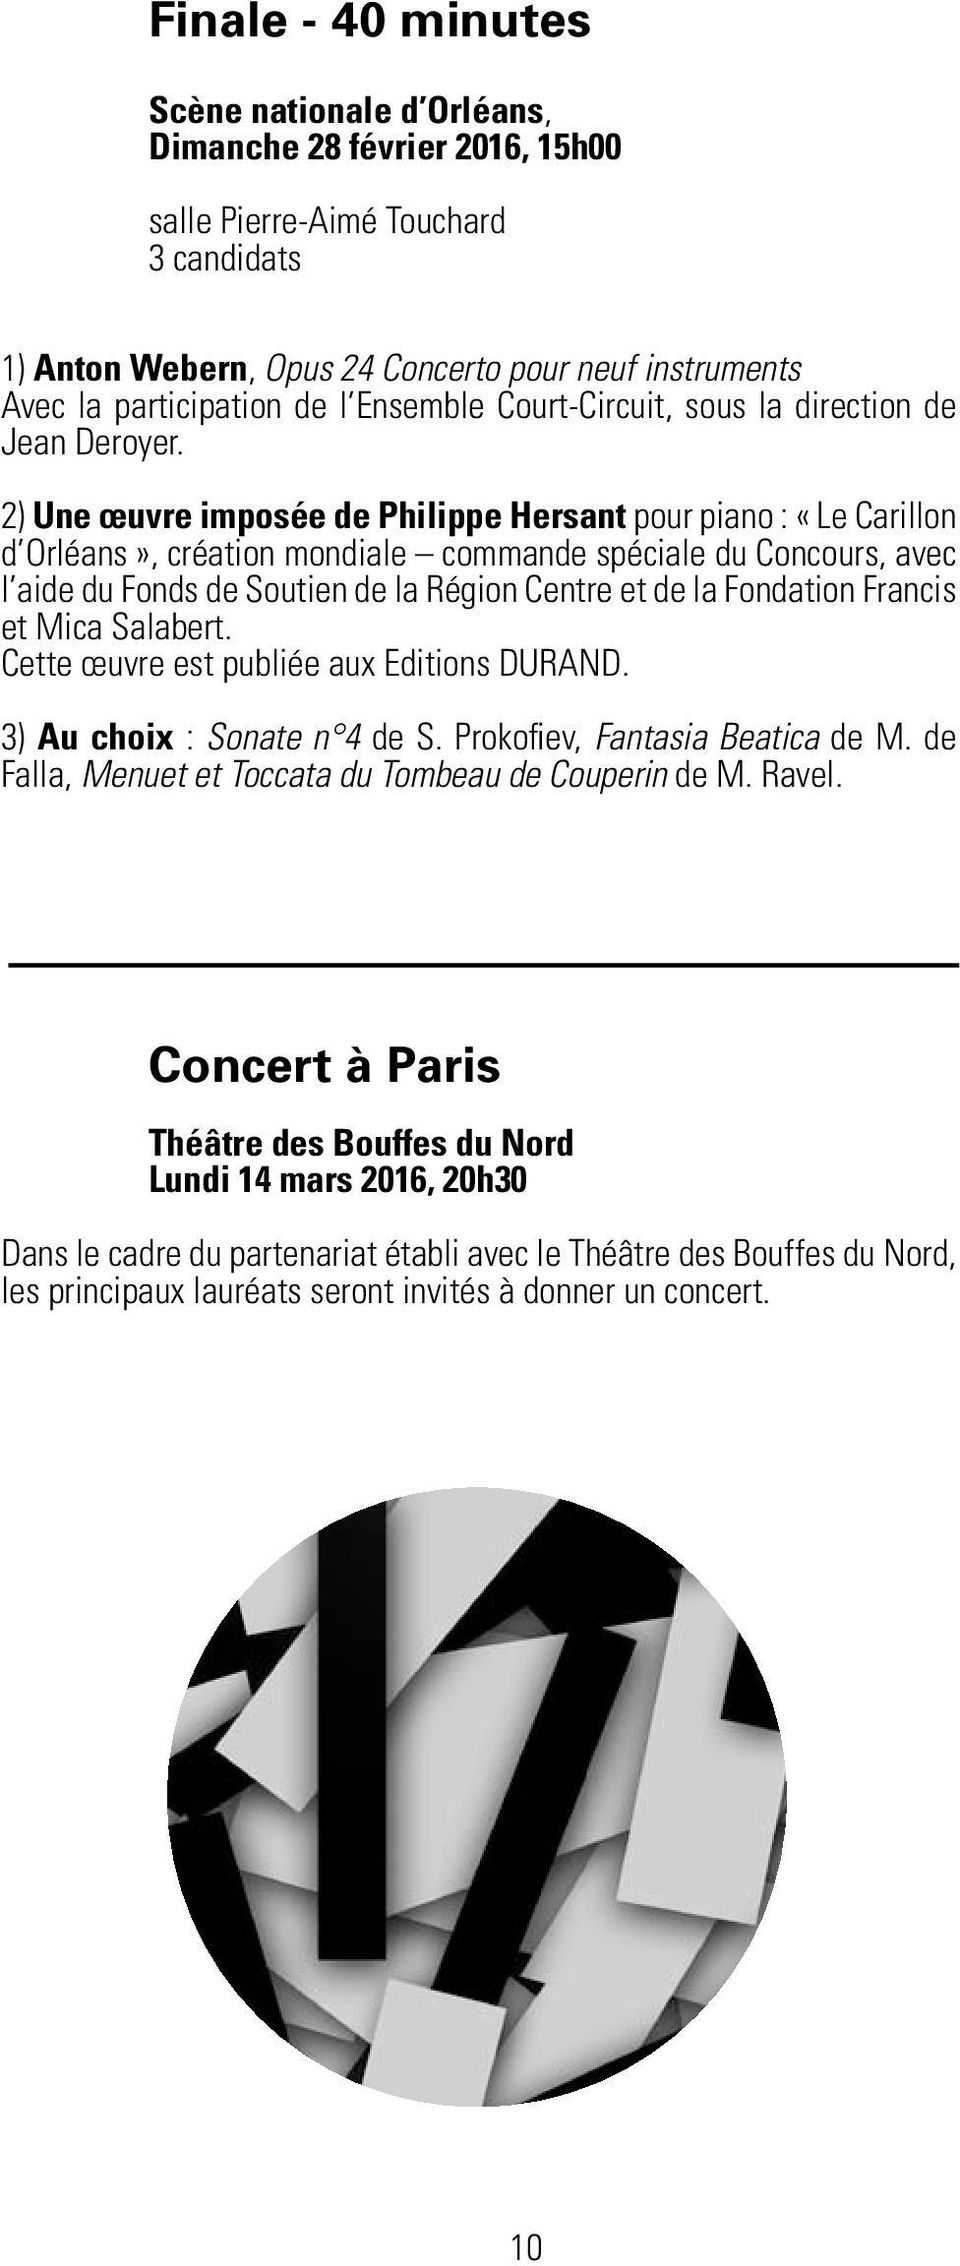 2) Une œuvre imposée de Philippe Hersant pour piano : «Le Carillon d Orléans», création mondiale commande spéciale du Concours, avec l aide du Fonds de Soutien de la Région Centre et de la Fondation